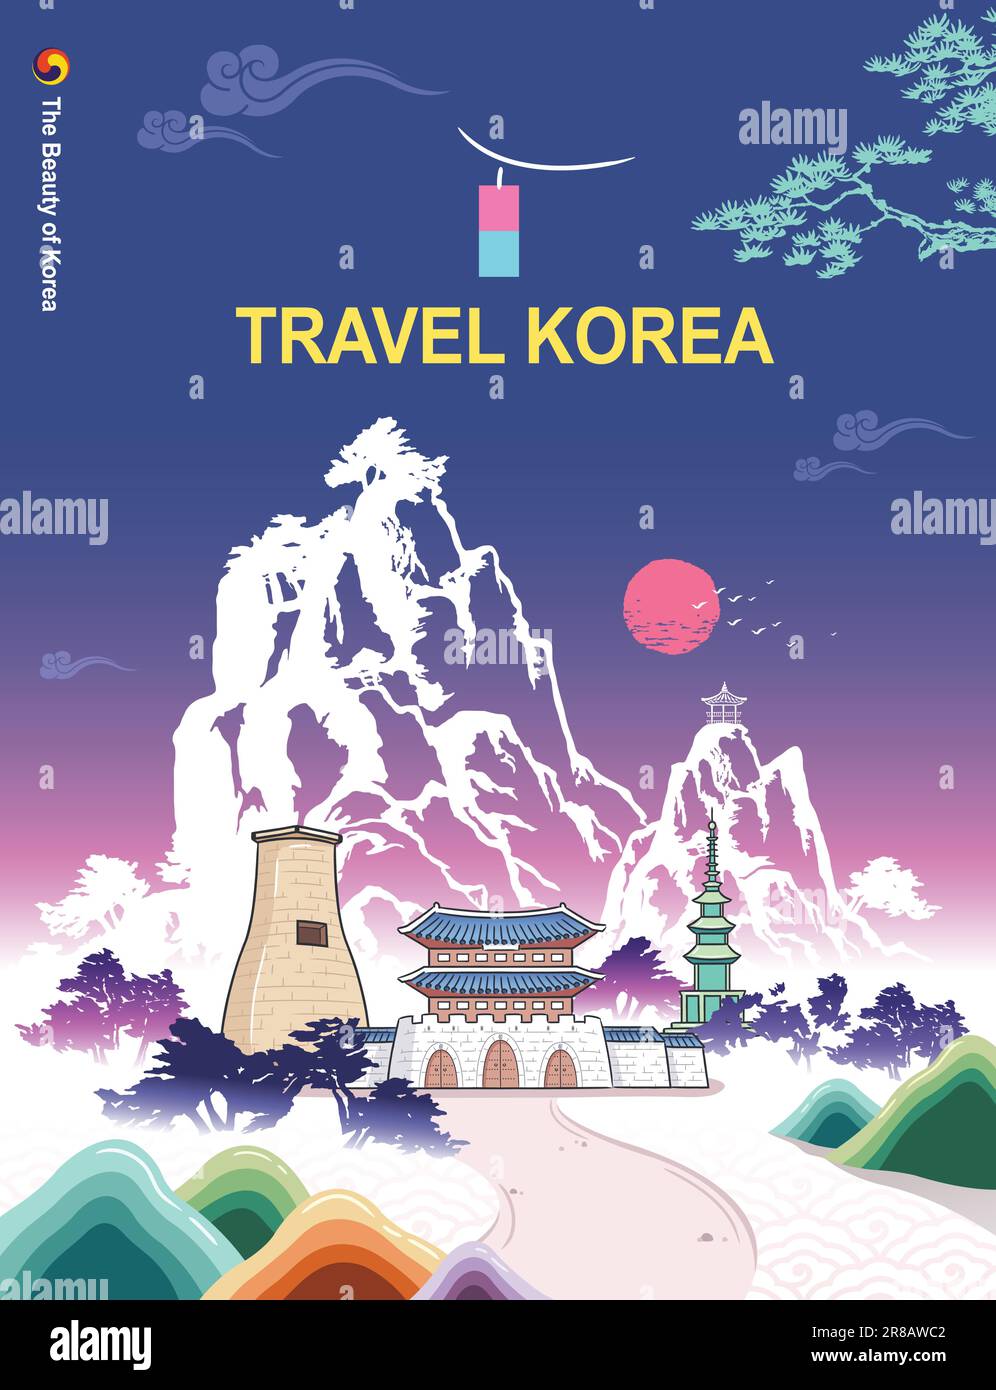 Wunderschöne Reise durch Korea, traditioneller Palast, Gwanghwamun, Wahrzeichen und natürliche Landschaft, Tintenmalerei, koreanischer traditioneller Malvektor. Stock Vektor